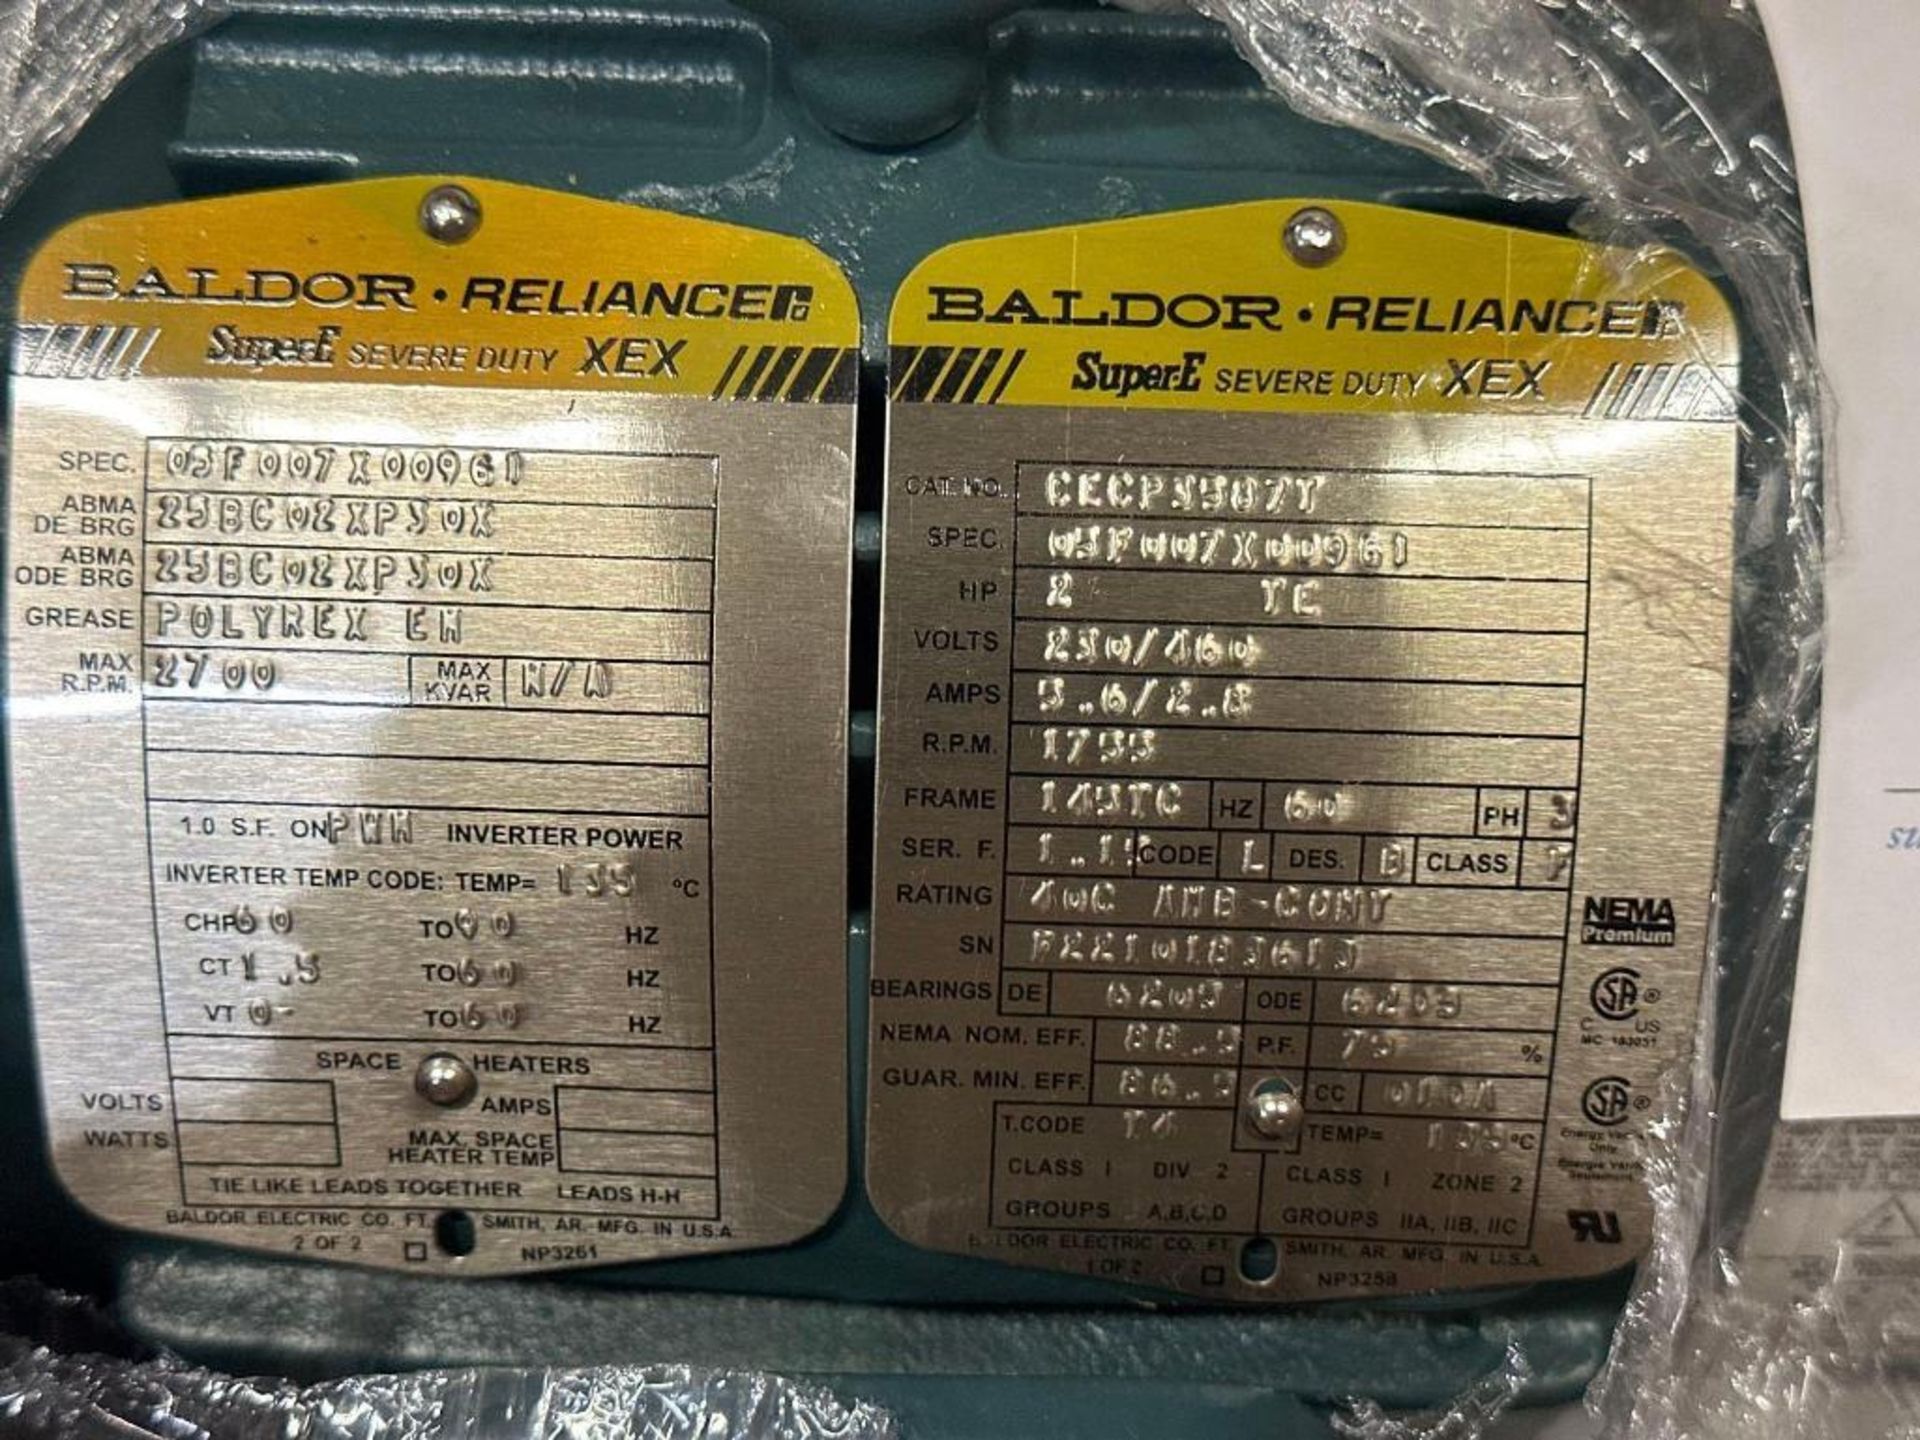 Baldor 2-HP Reliance Super E Motor (New) - Image 2 of 2